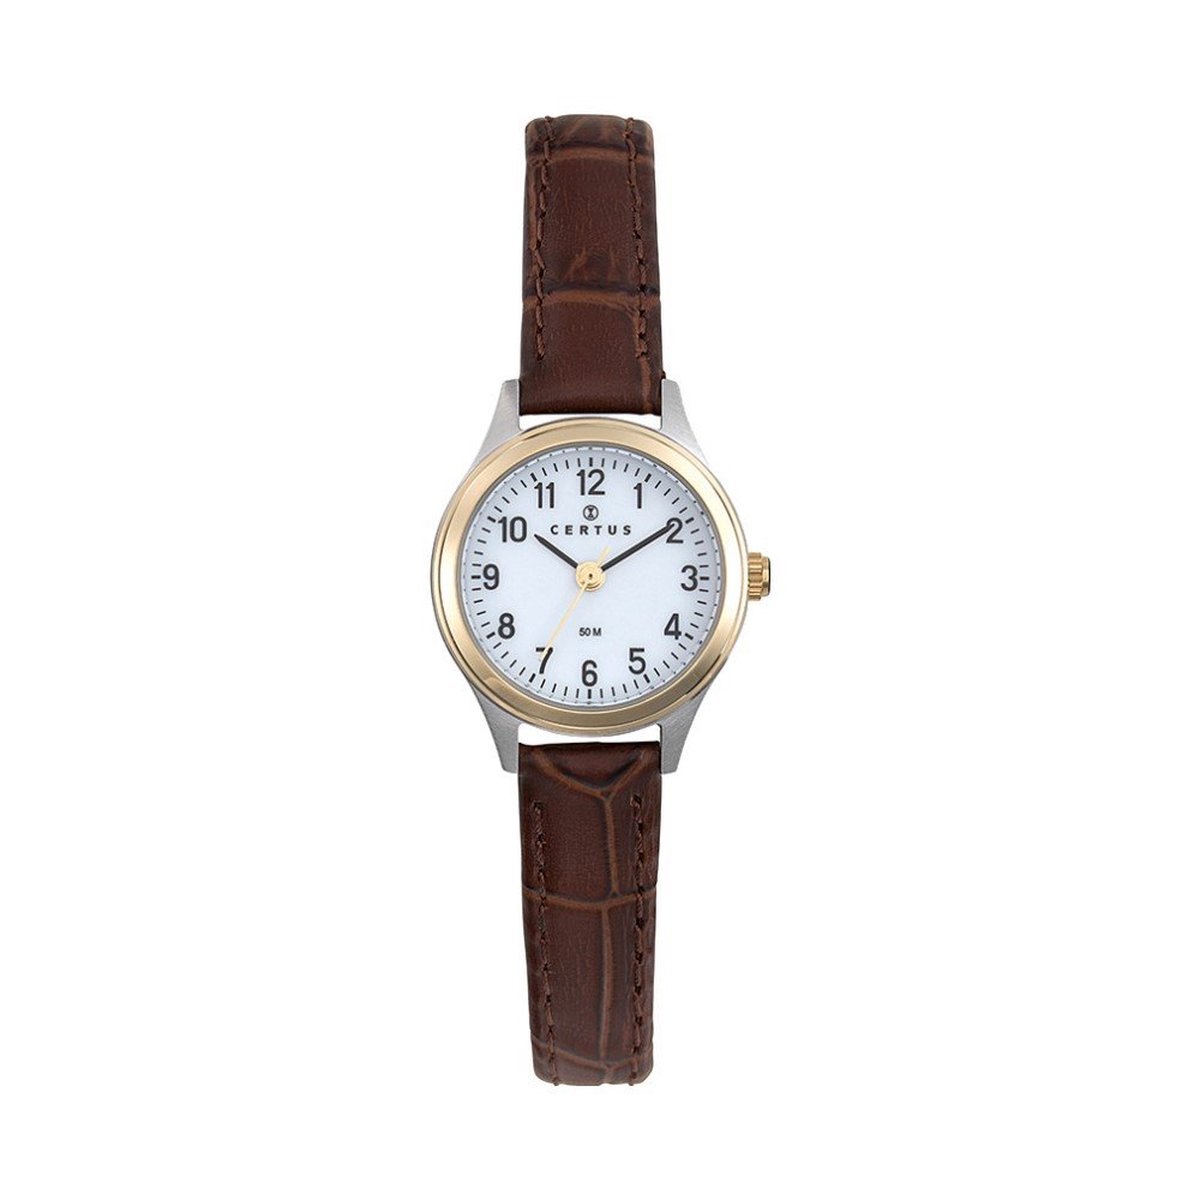 Certus-Duidelijk Dames horloge-Bruin lederen band-Bicolor.